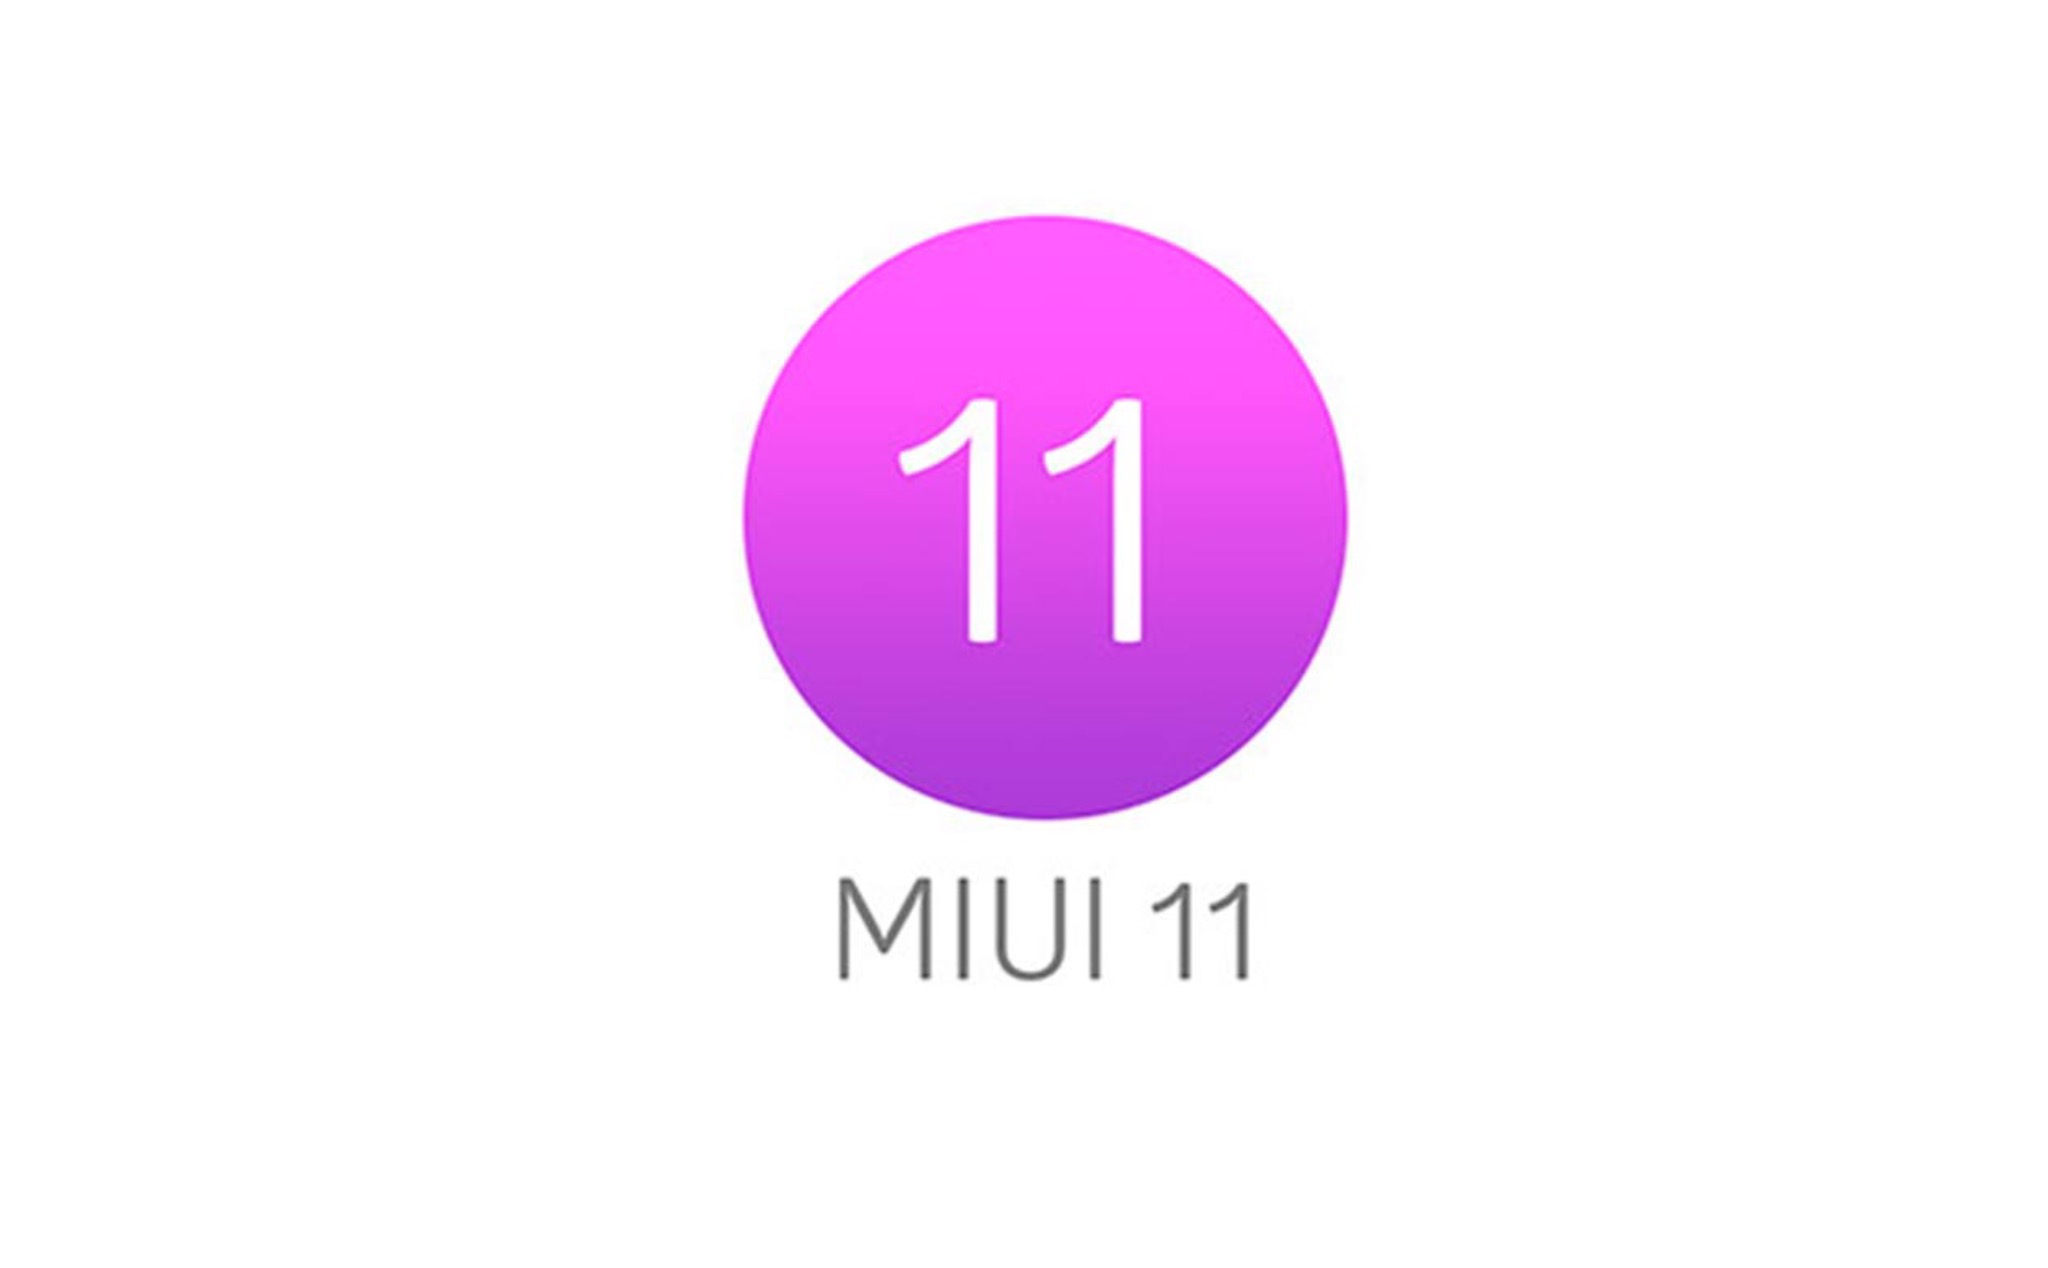 Xiaomi công bố các tính năng mới trên MIUI 11: giao diện mới, có nền tối, quản lý thông báo tốt hơn